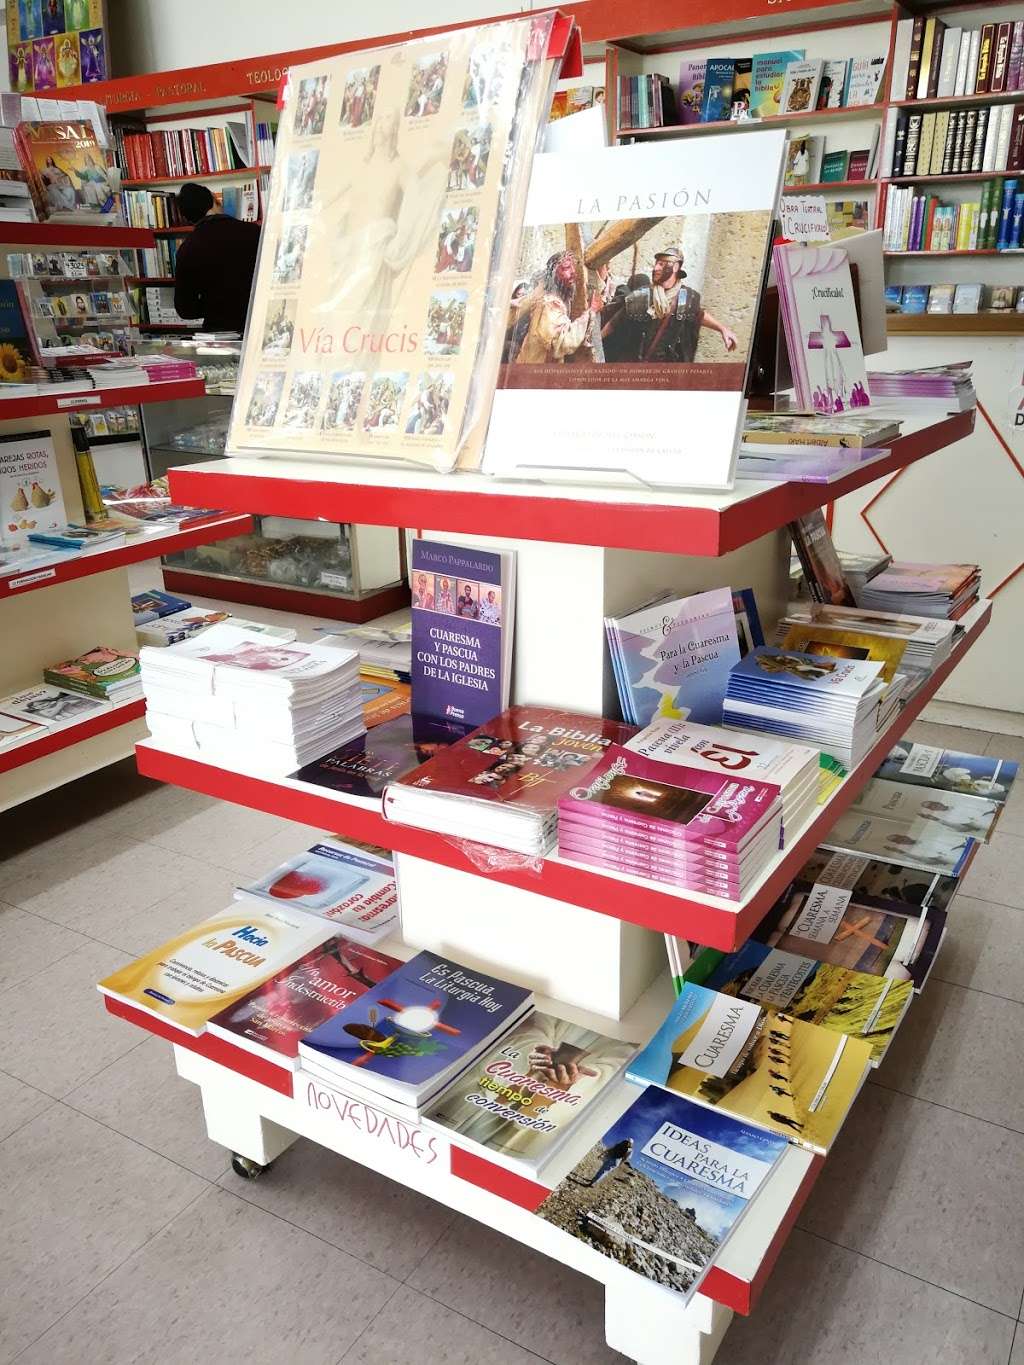 Librería Paulinas | Paseo del Centenario 9671, Zona Urbana Rio Tijuana, 22010 Tijuana, B.C., Mexico | Phone: 664 684 7563